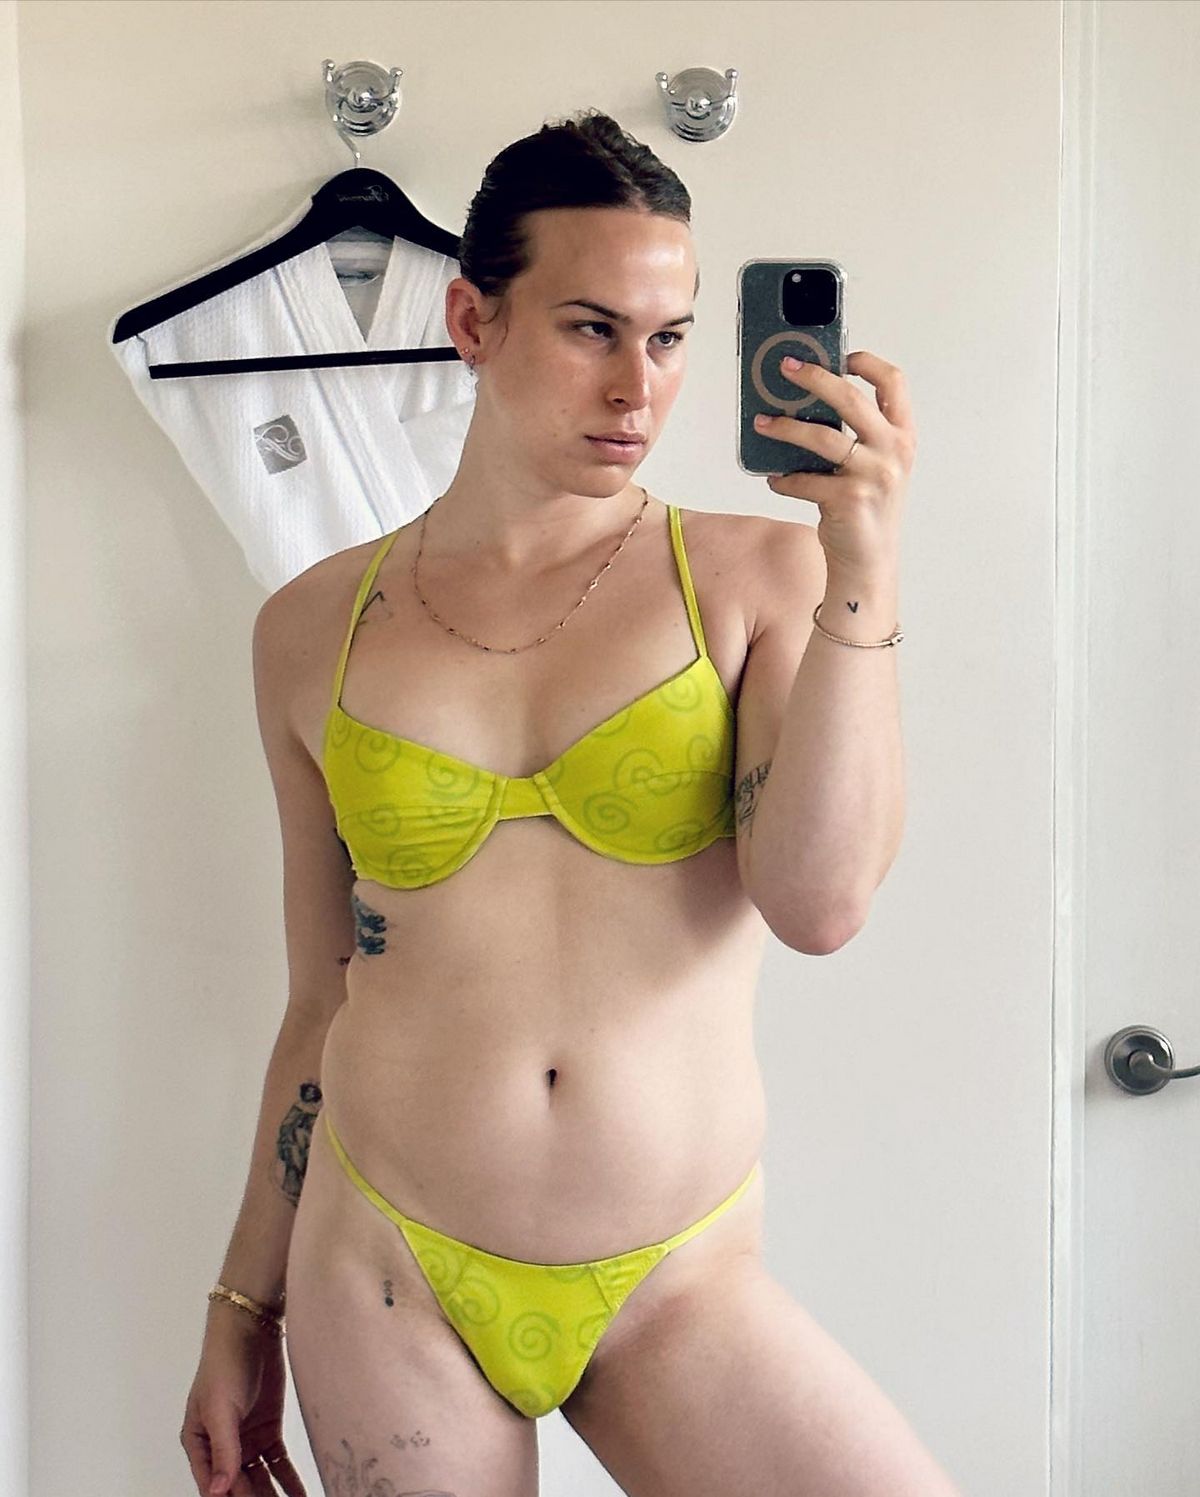 Tommy Dorfman, connue pour son rôle dans la série 13 Reasons Why, a partagé des photos sur Instagram alors qu’elle prenait des vacances bien méritées, vêtue d’un maillot de bain vert.